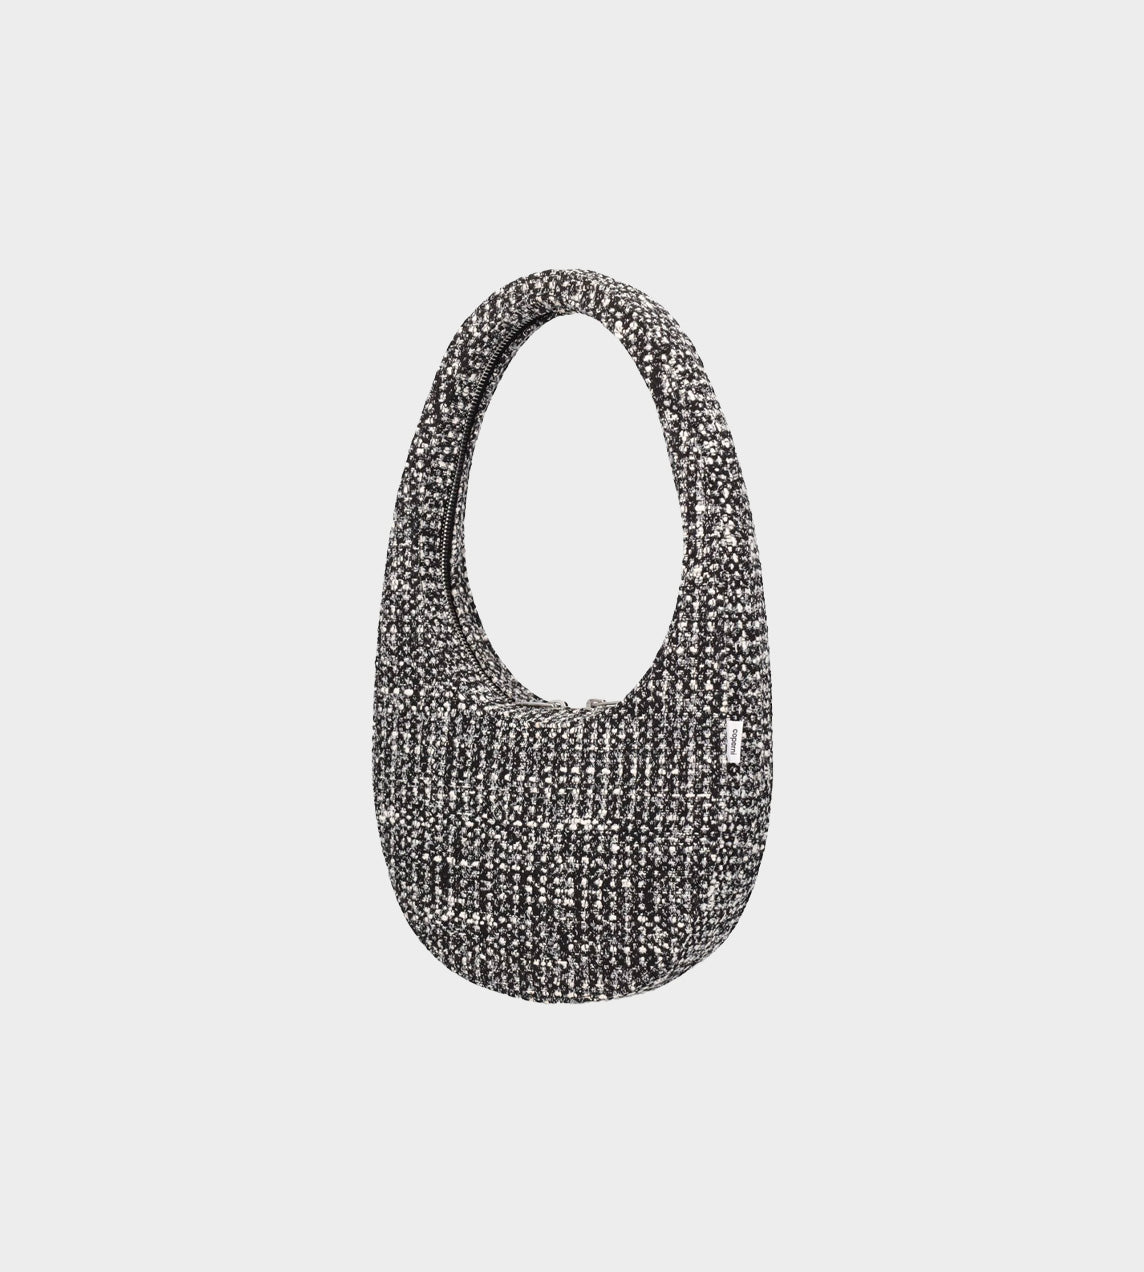 Coperni - Swipe Bag Tweed Black/White